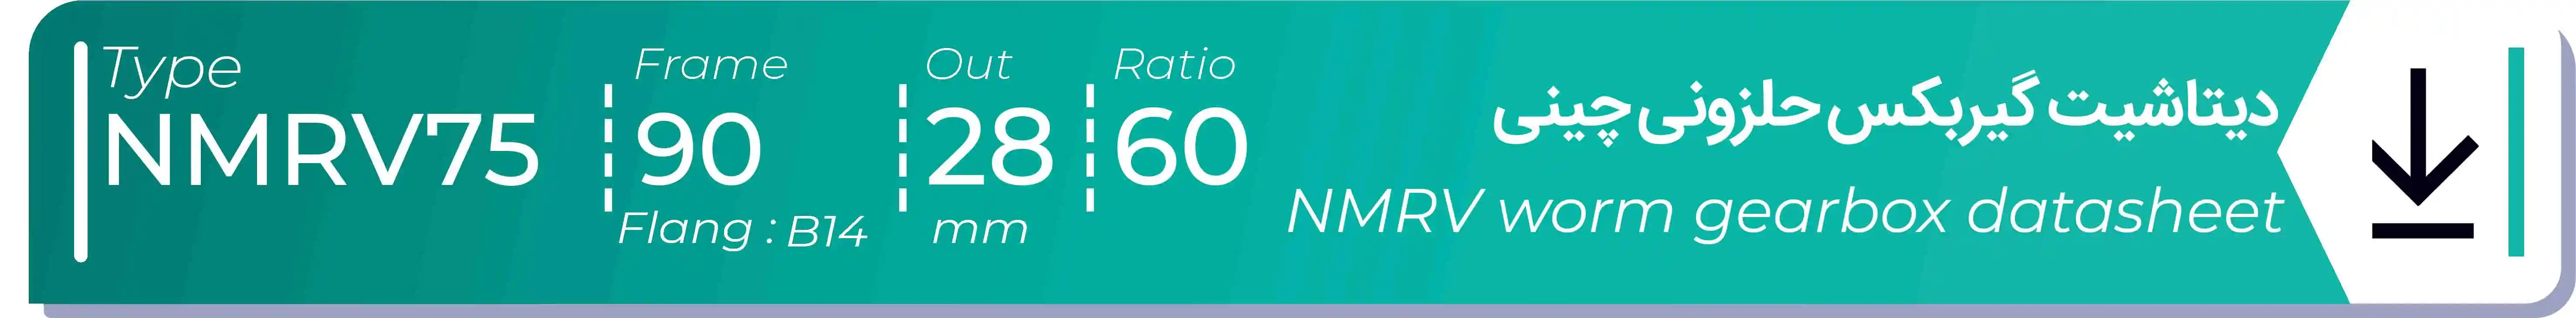  دیتاشیت و مشخصات فنی گیربکس حلزونی چینی   NMRV75  -  با خروجی 28- میلی متر و نسبت60 و فریم 90